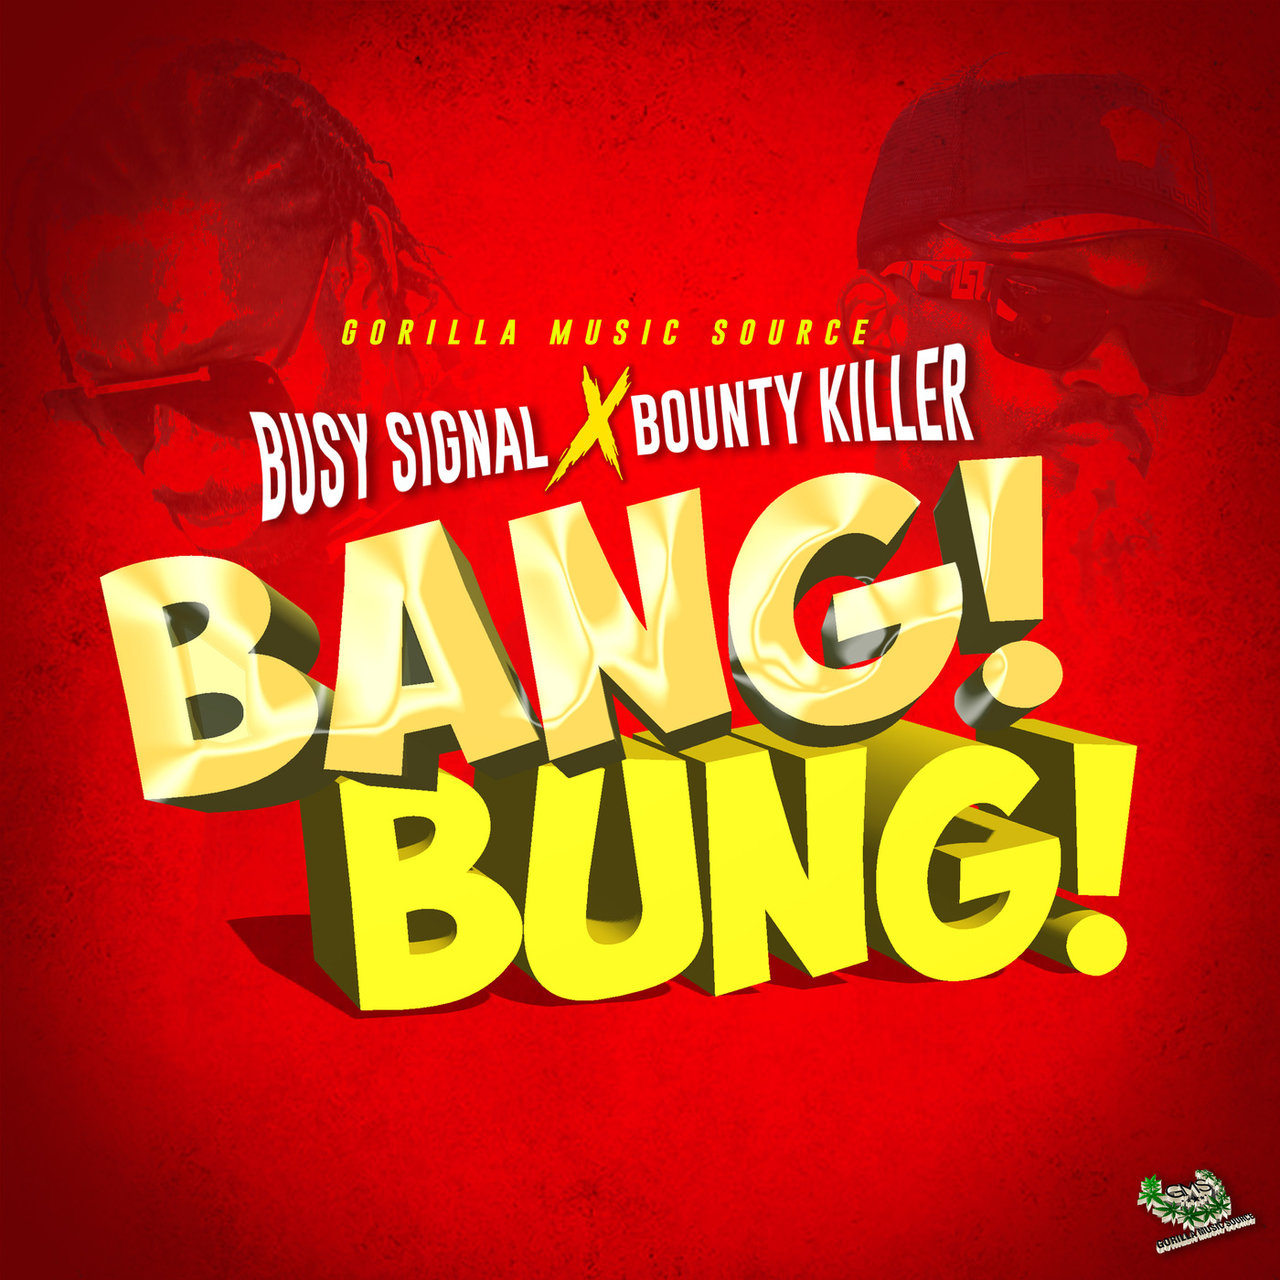 Busy Signal - Bang Bung (ft. Bounty Killer) (Cover)